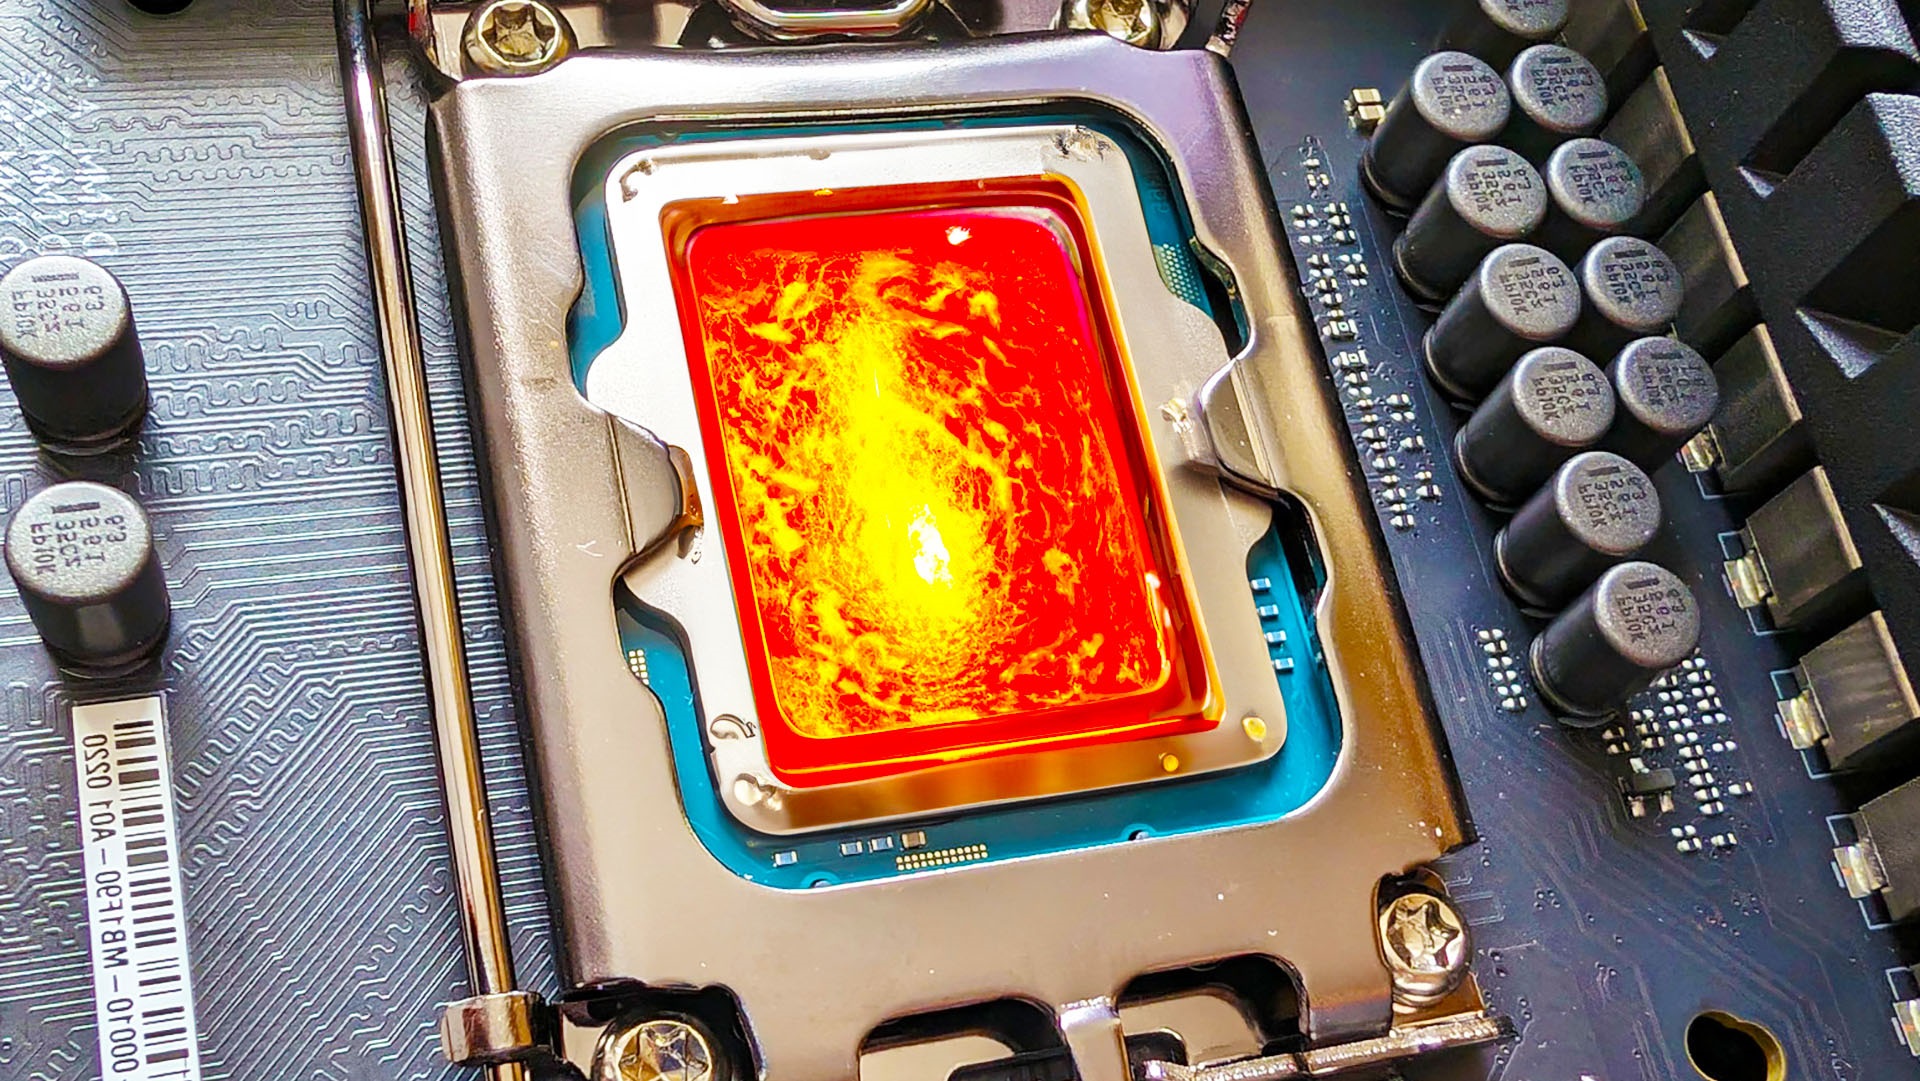 Oyun geliştiricisi, Intel’in “hatalı CPU’lar sattığını” acımasızca eleştirdi